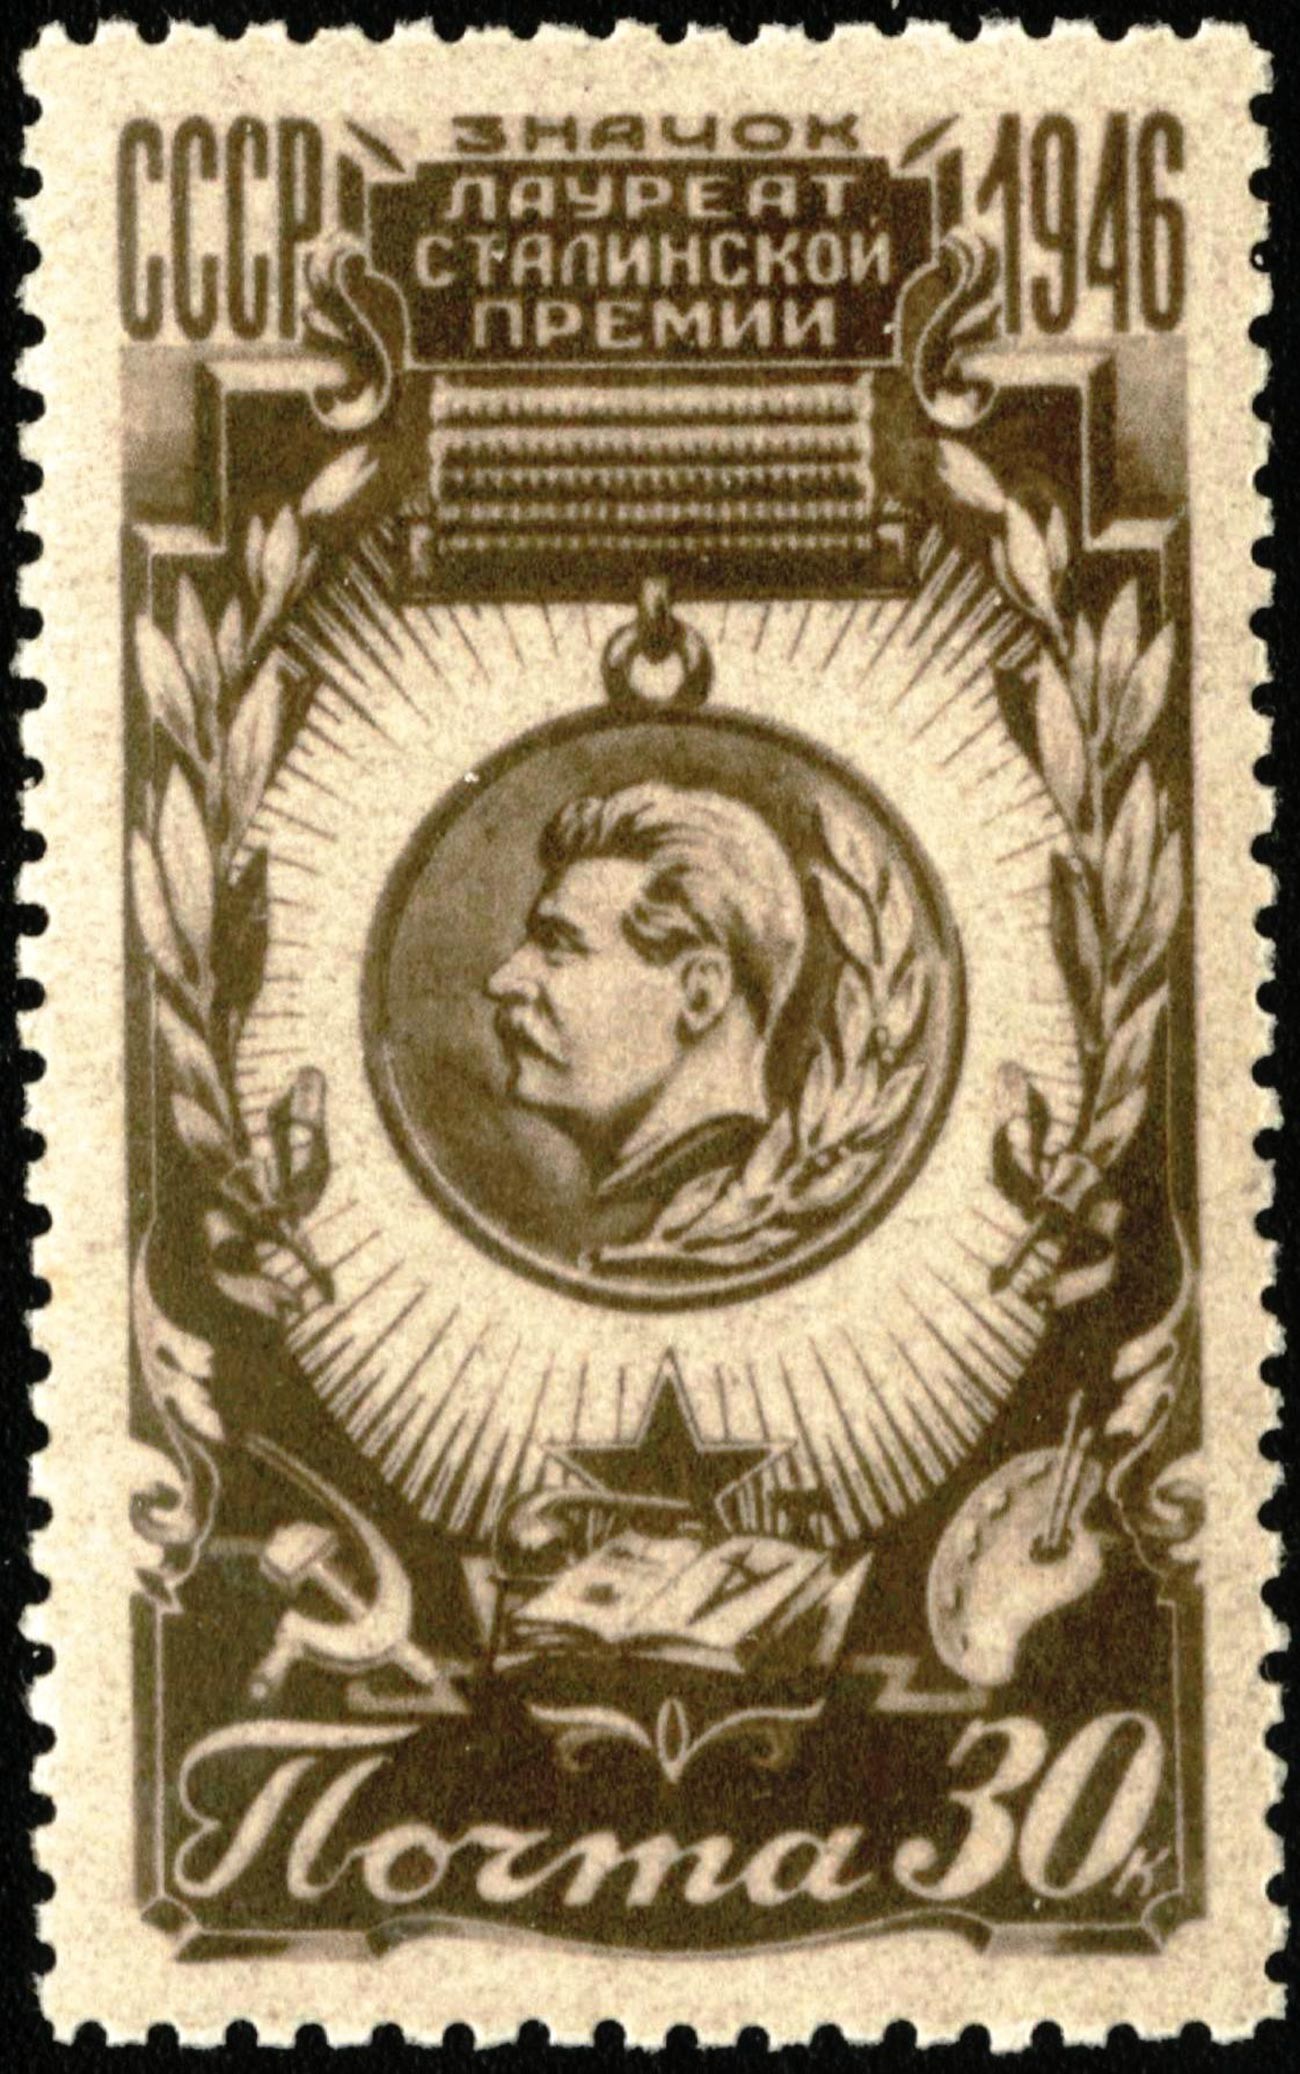 「スターリン賞受賞者」のバッジを描いた切手、1946年